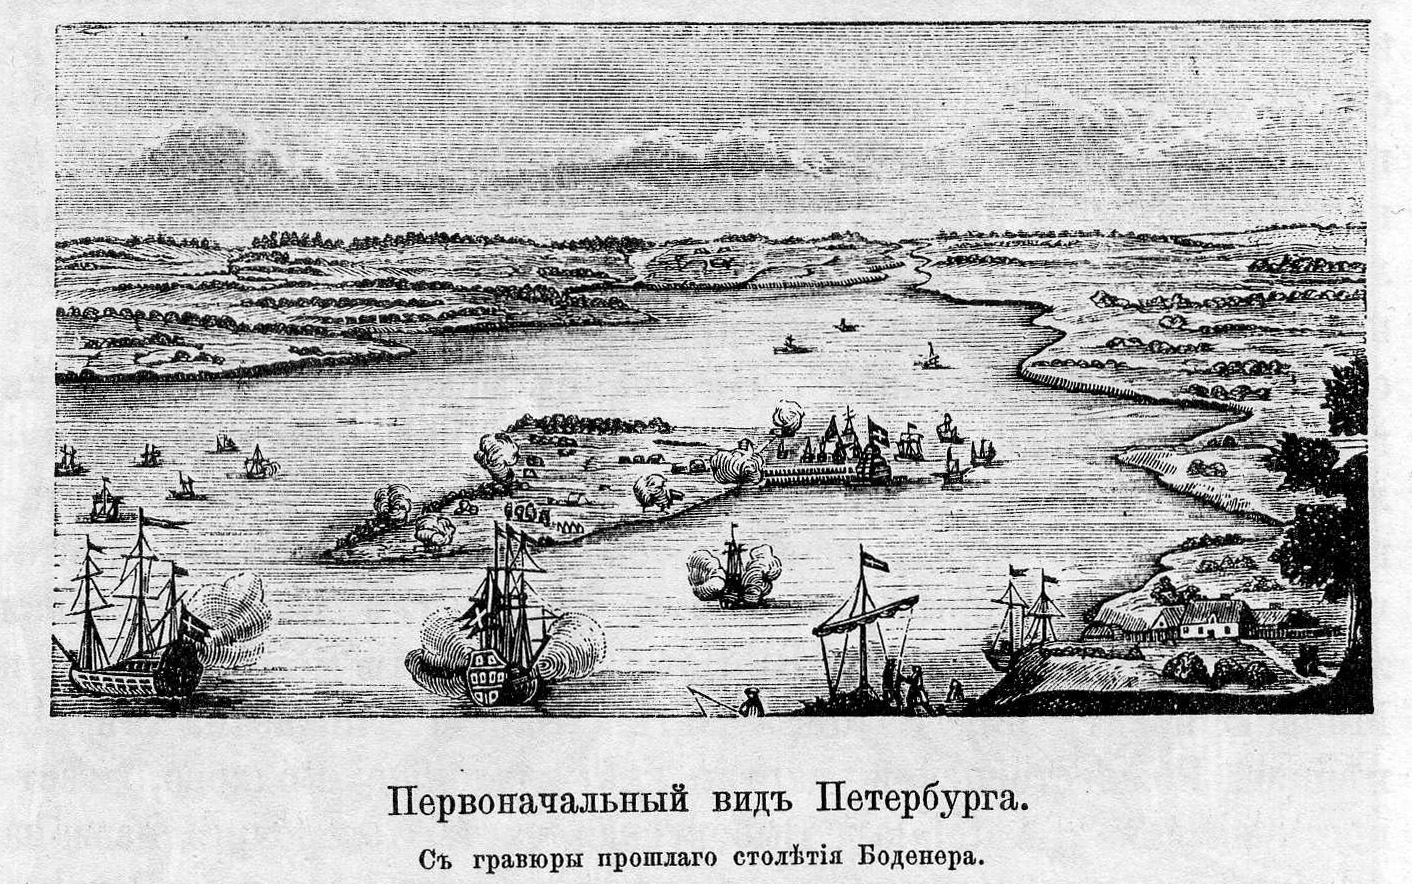 Гравюра Боденера. 18 век. Первоначальный вид Петербурга